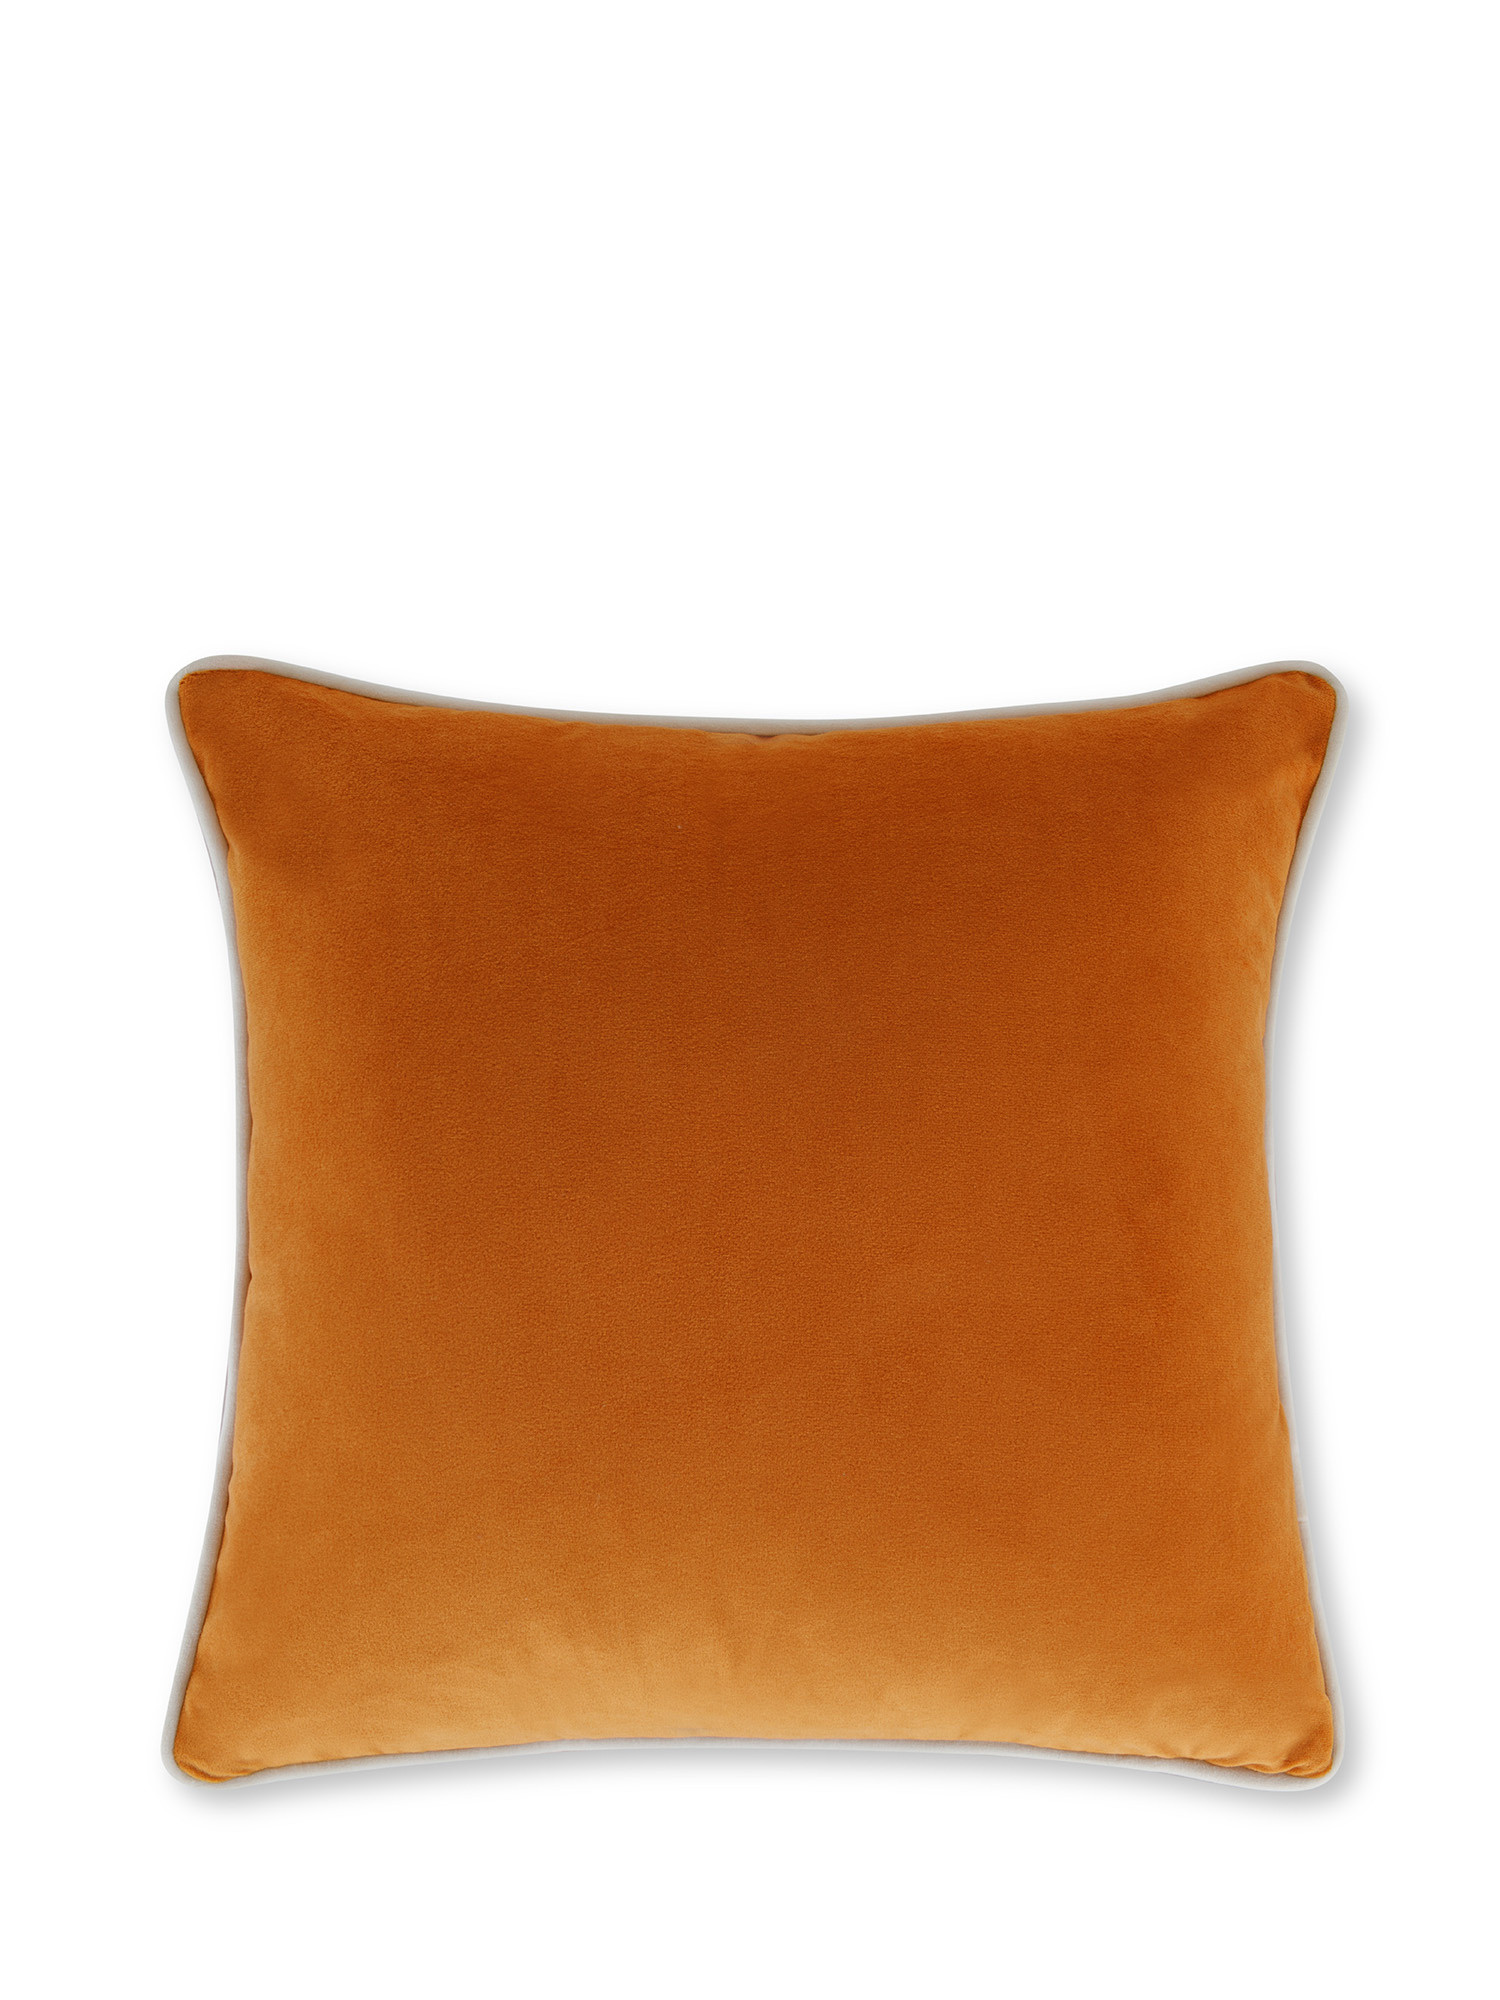 Cuscino in velluto con piping applicato sul bordo 45x45 cm, Arancione, large image number 0